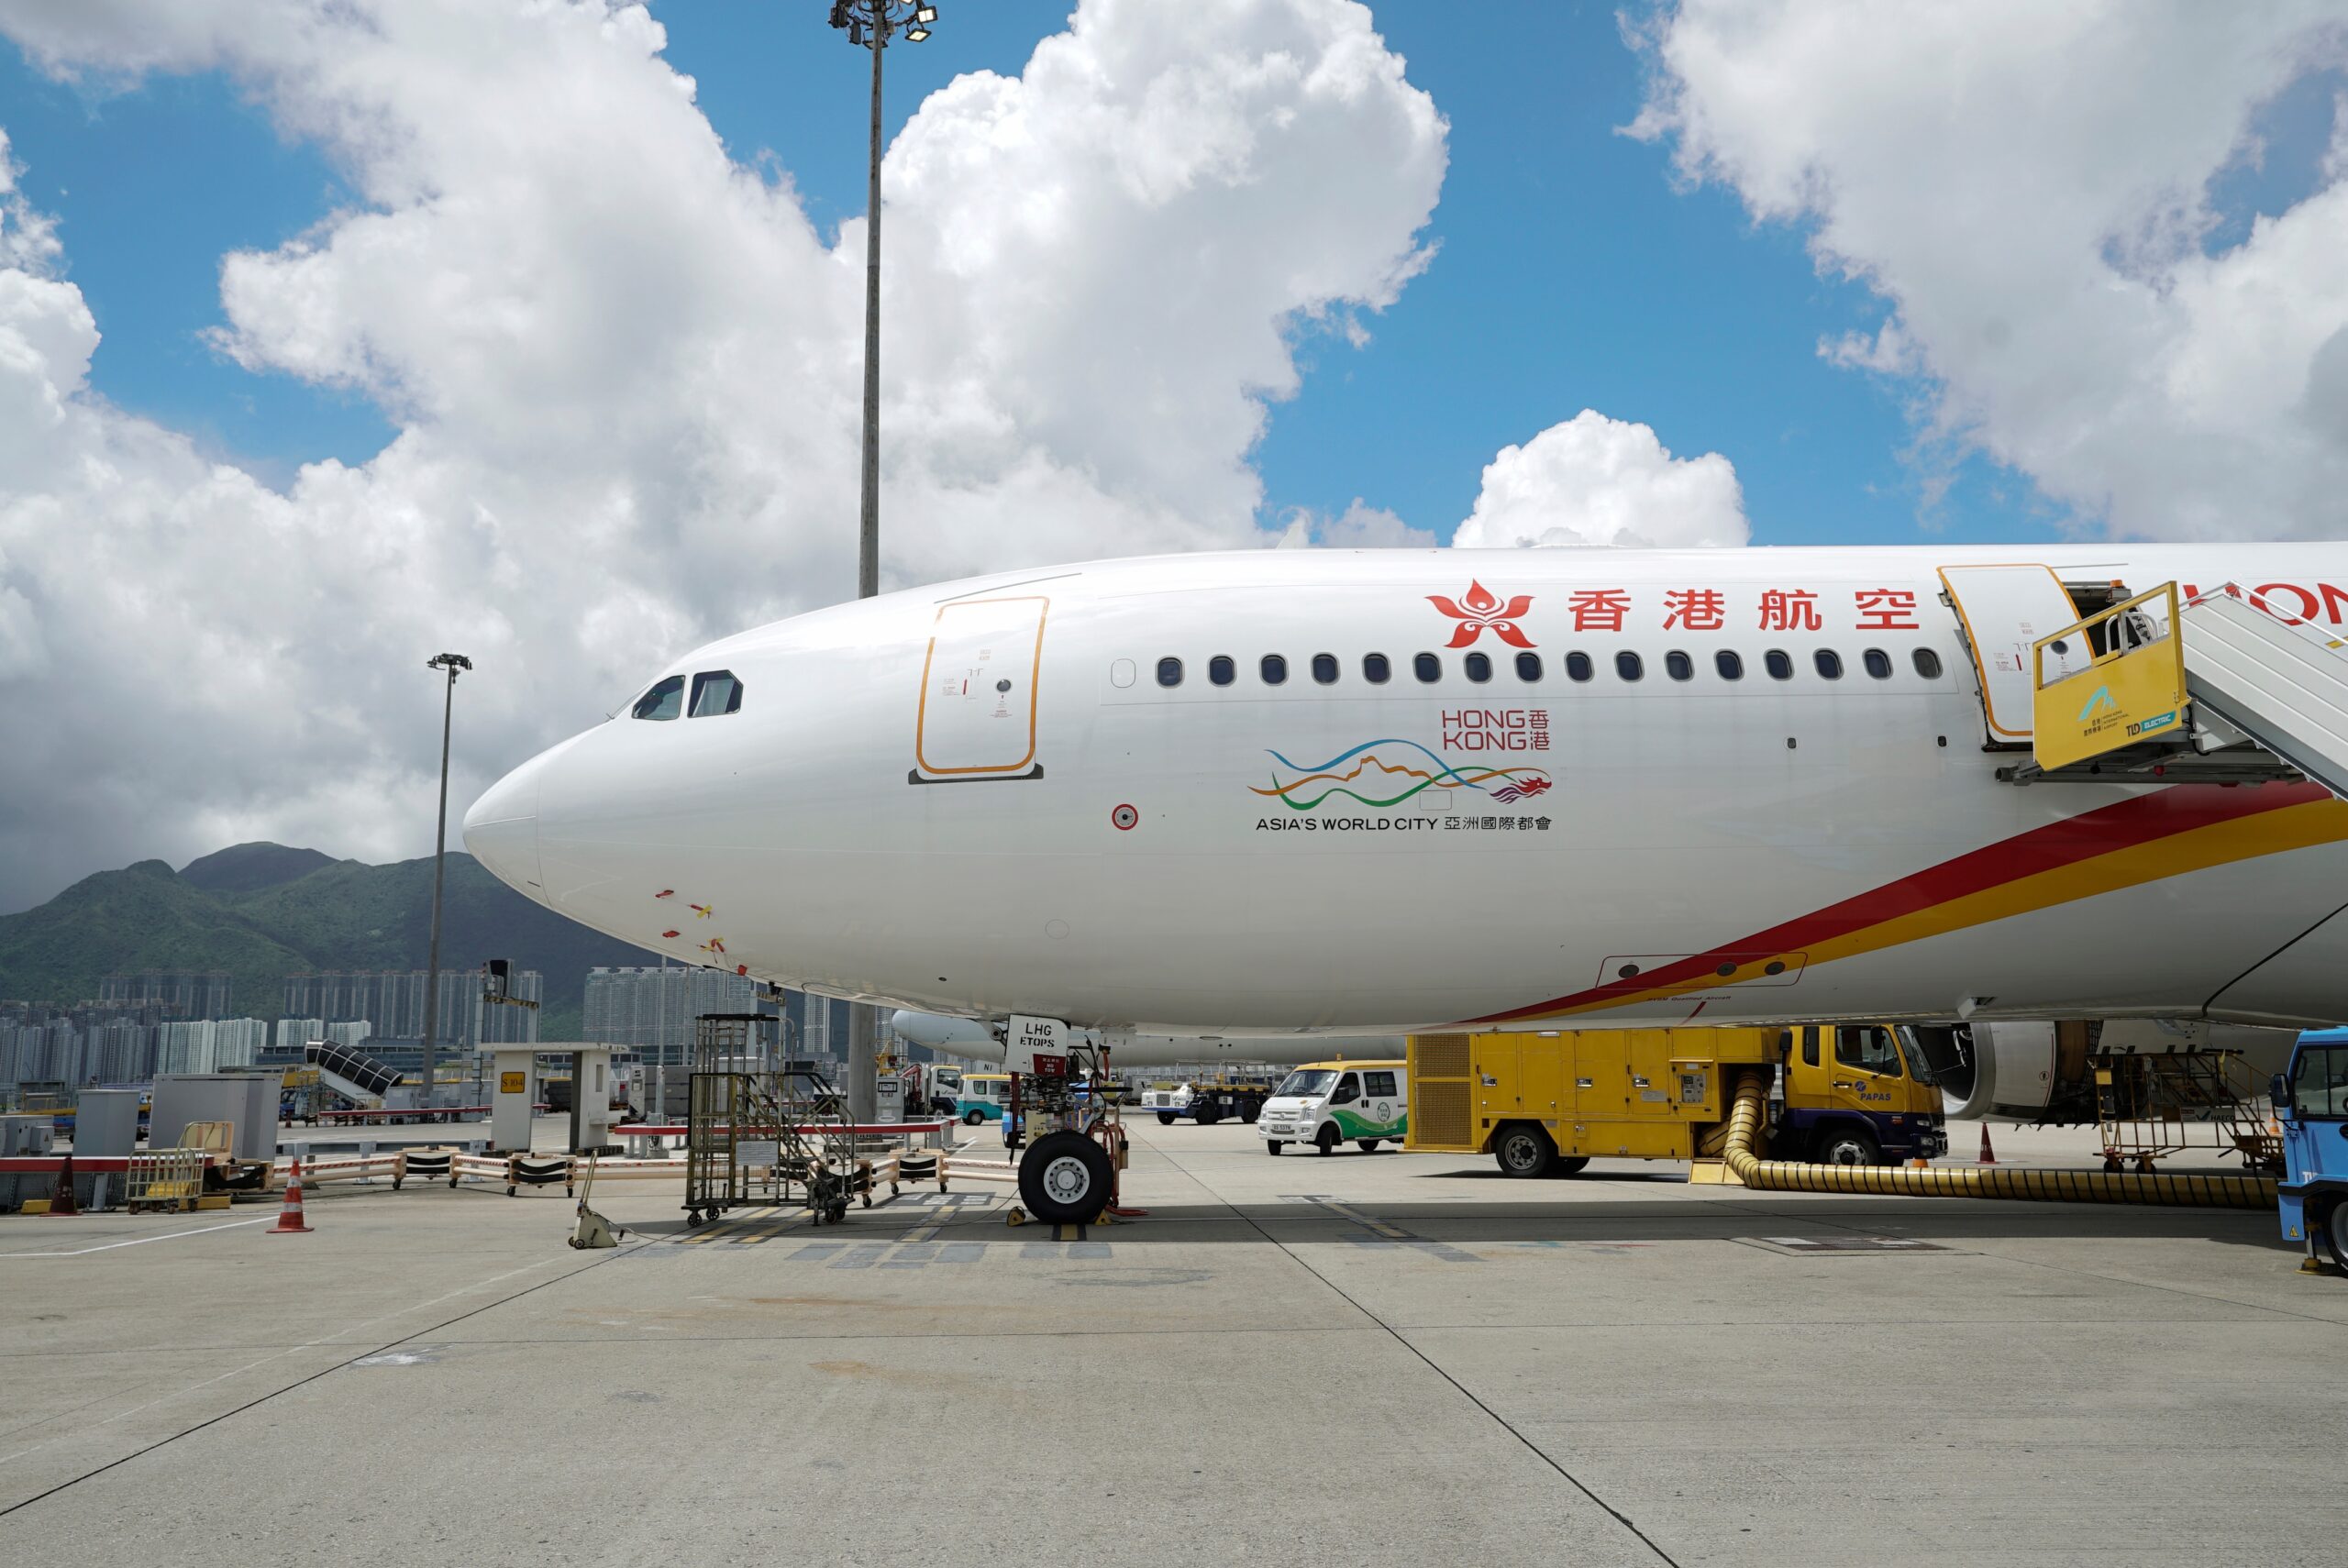 Hong Kong Airlines Expands A330 Fleet